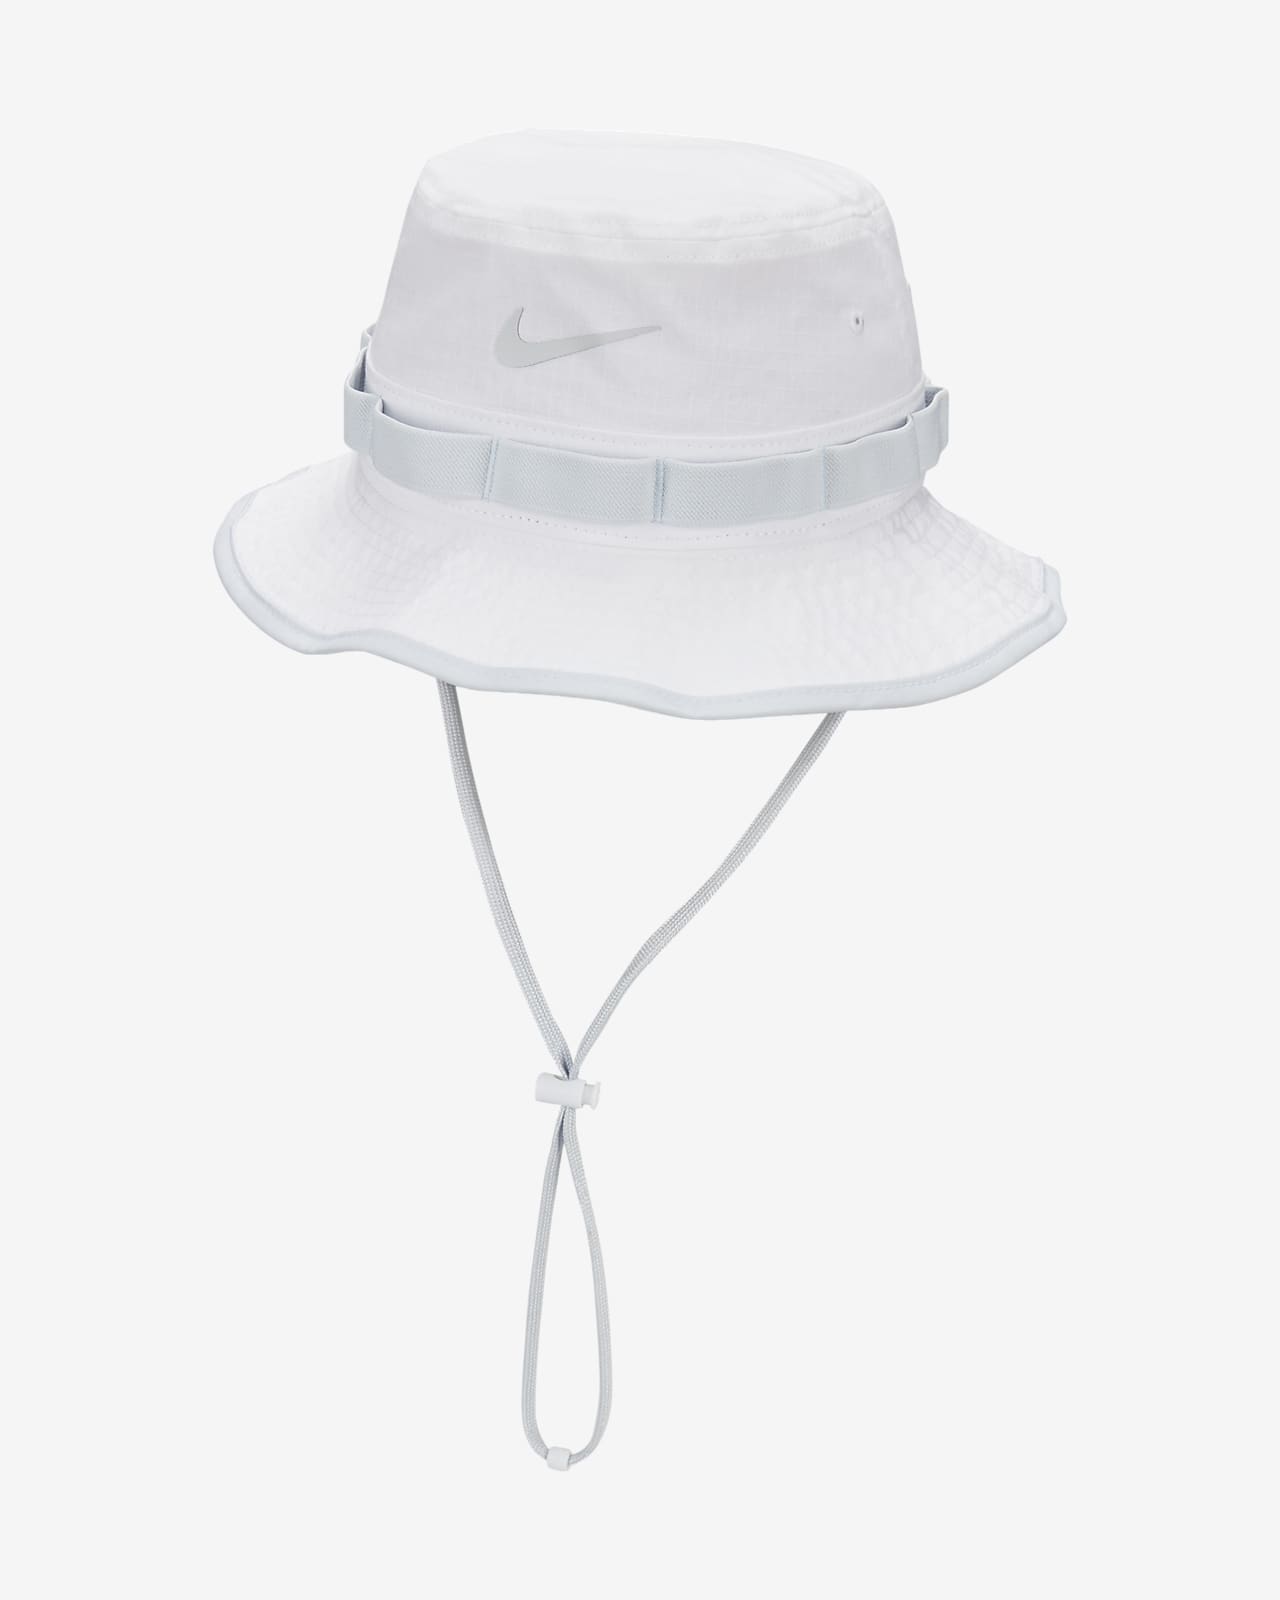 Nike Dri-FIT Apex Bucket Hat.